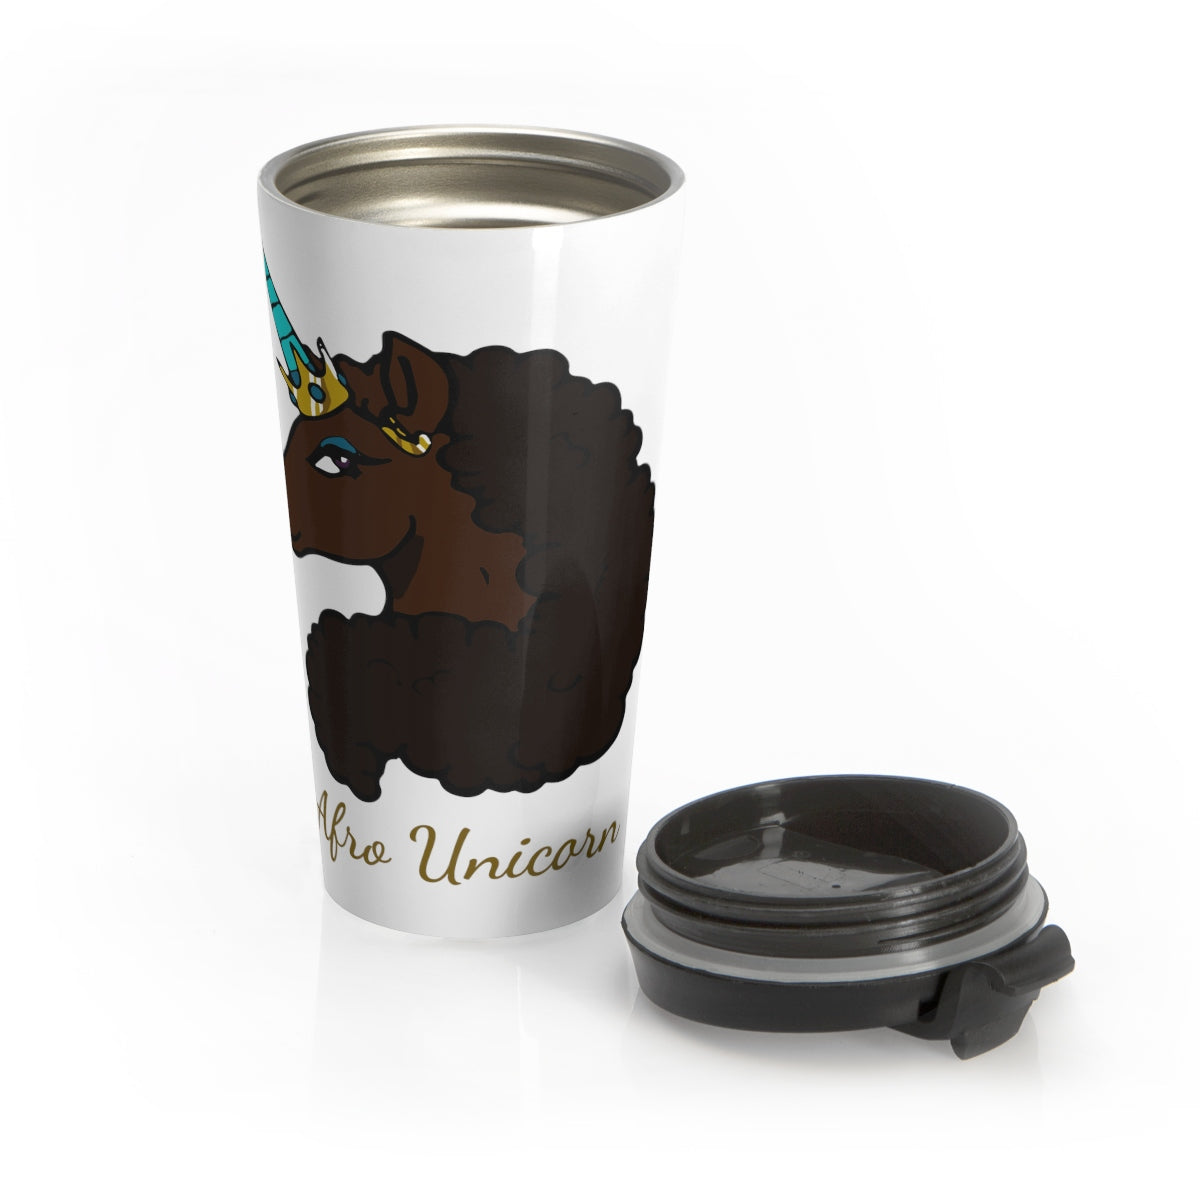 Afro Unicorn Stainless Steel Travel Mug - Mocha- Afro Unicorn